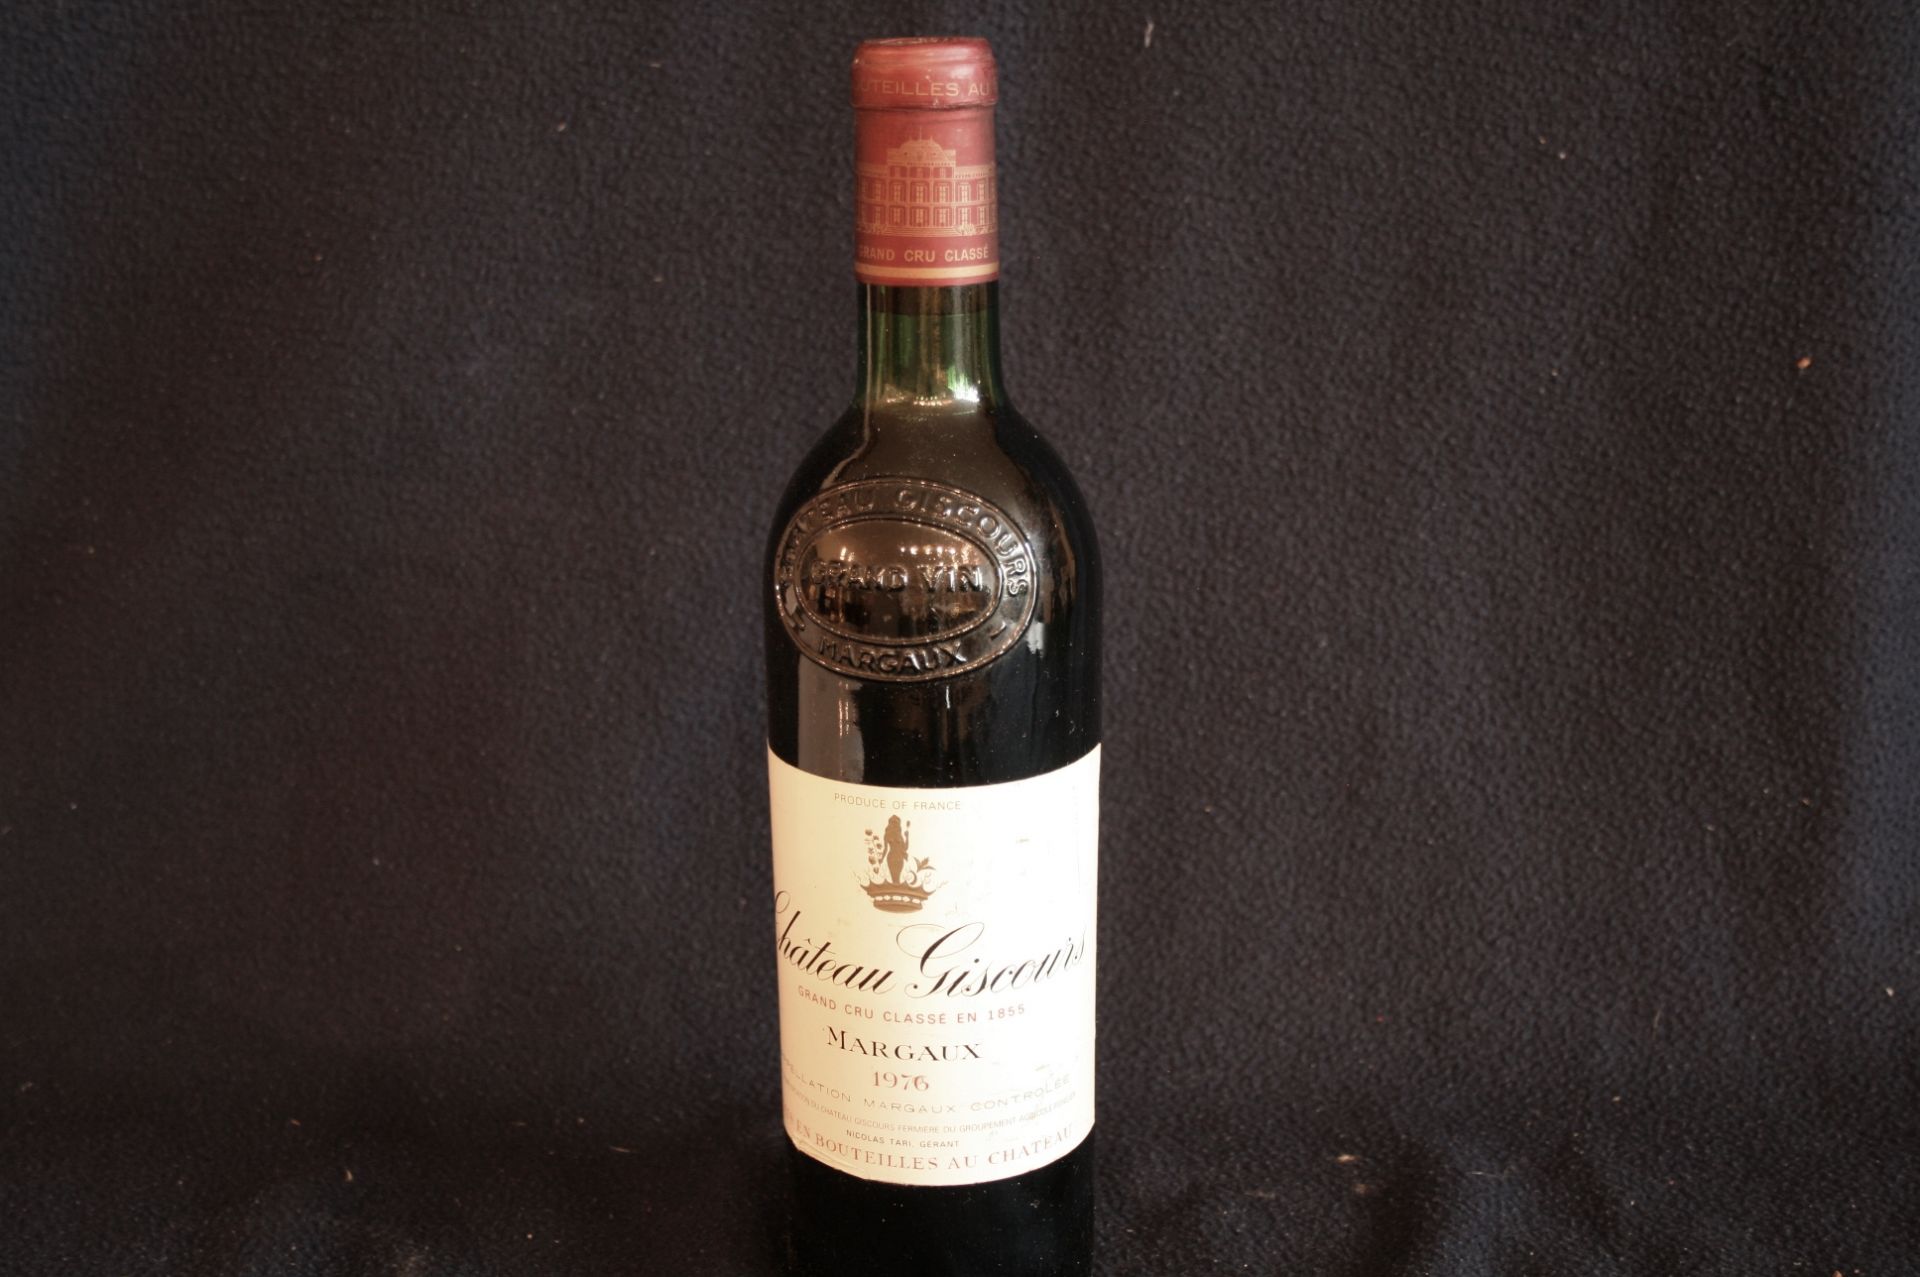 1 bouteille de MARGAUX, château GISCOURS, rouge, 1976 - 1 bottle of MARGAUX, [...]